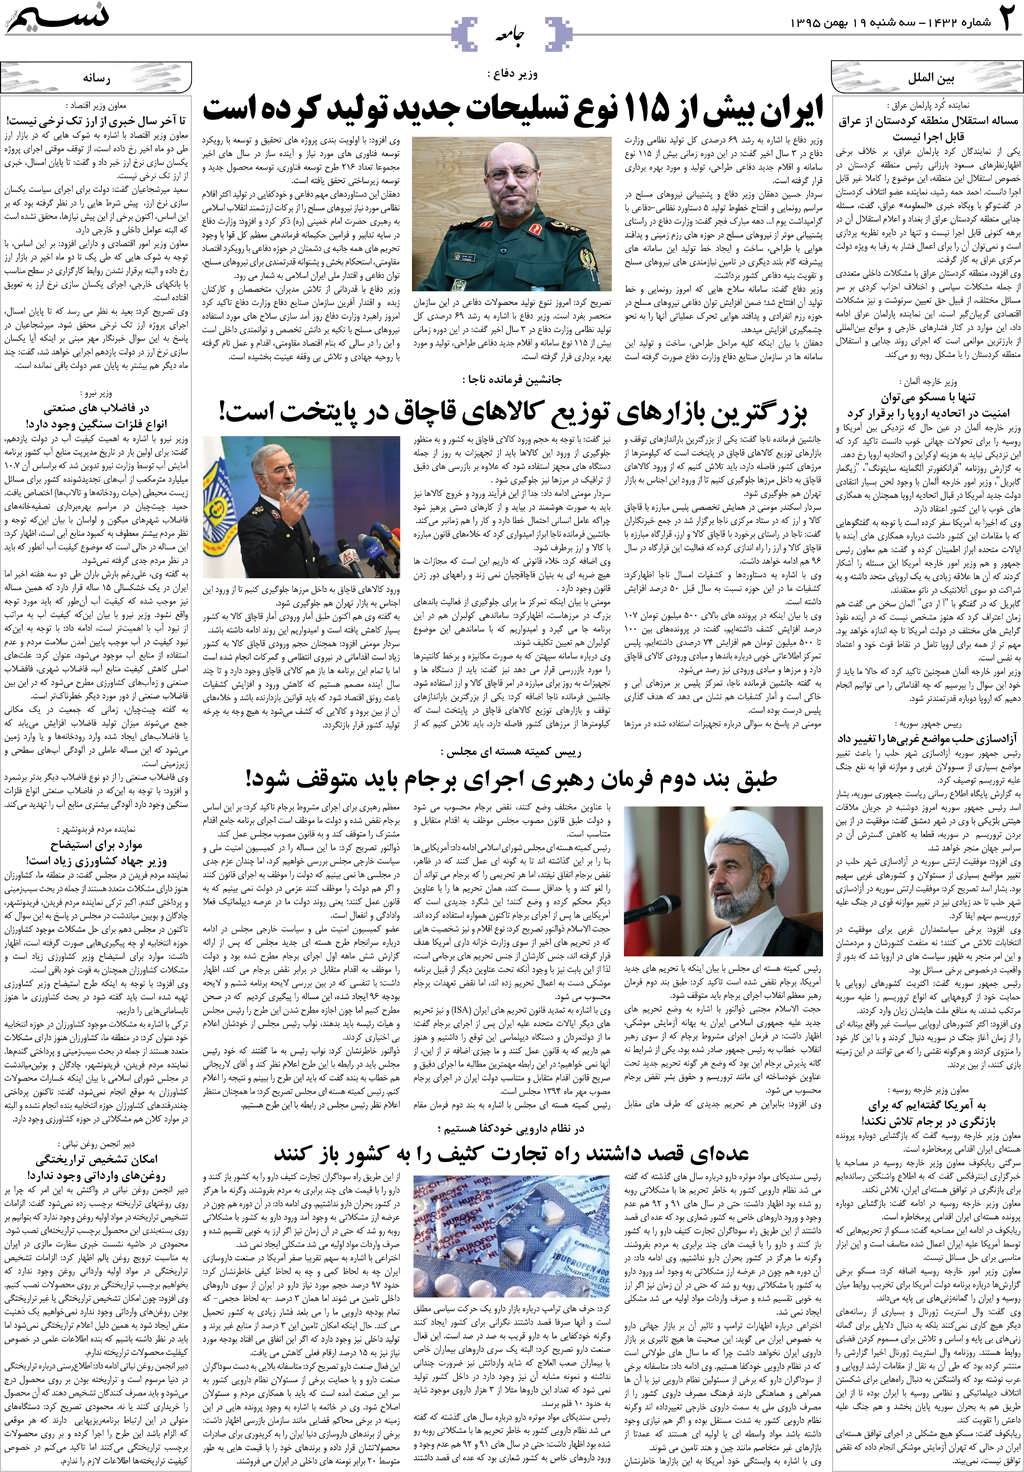 صفحه جامعه روزنامه نسیم شماره 1432